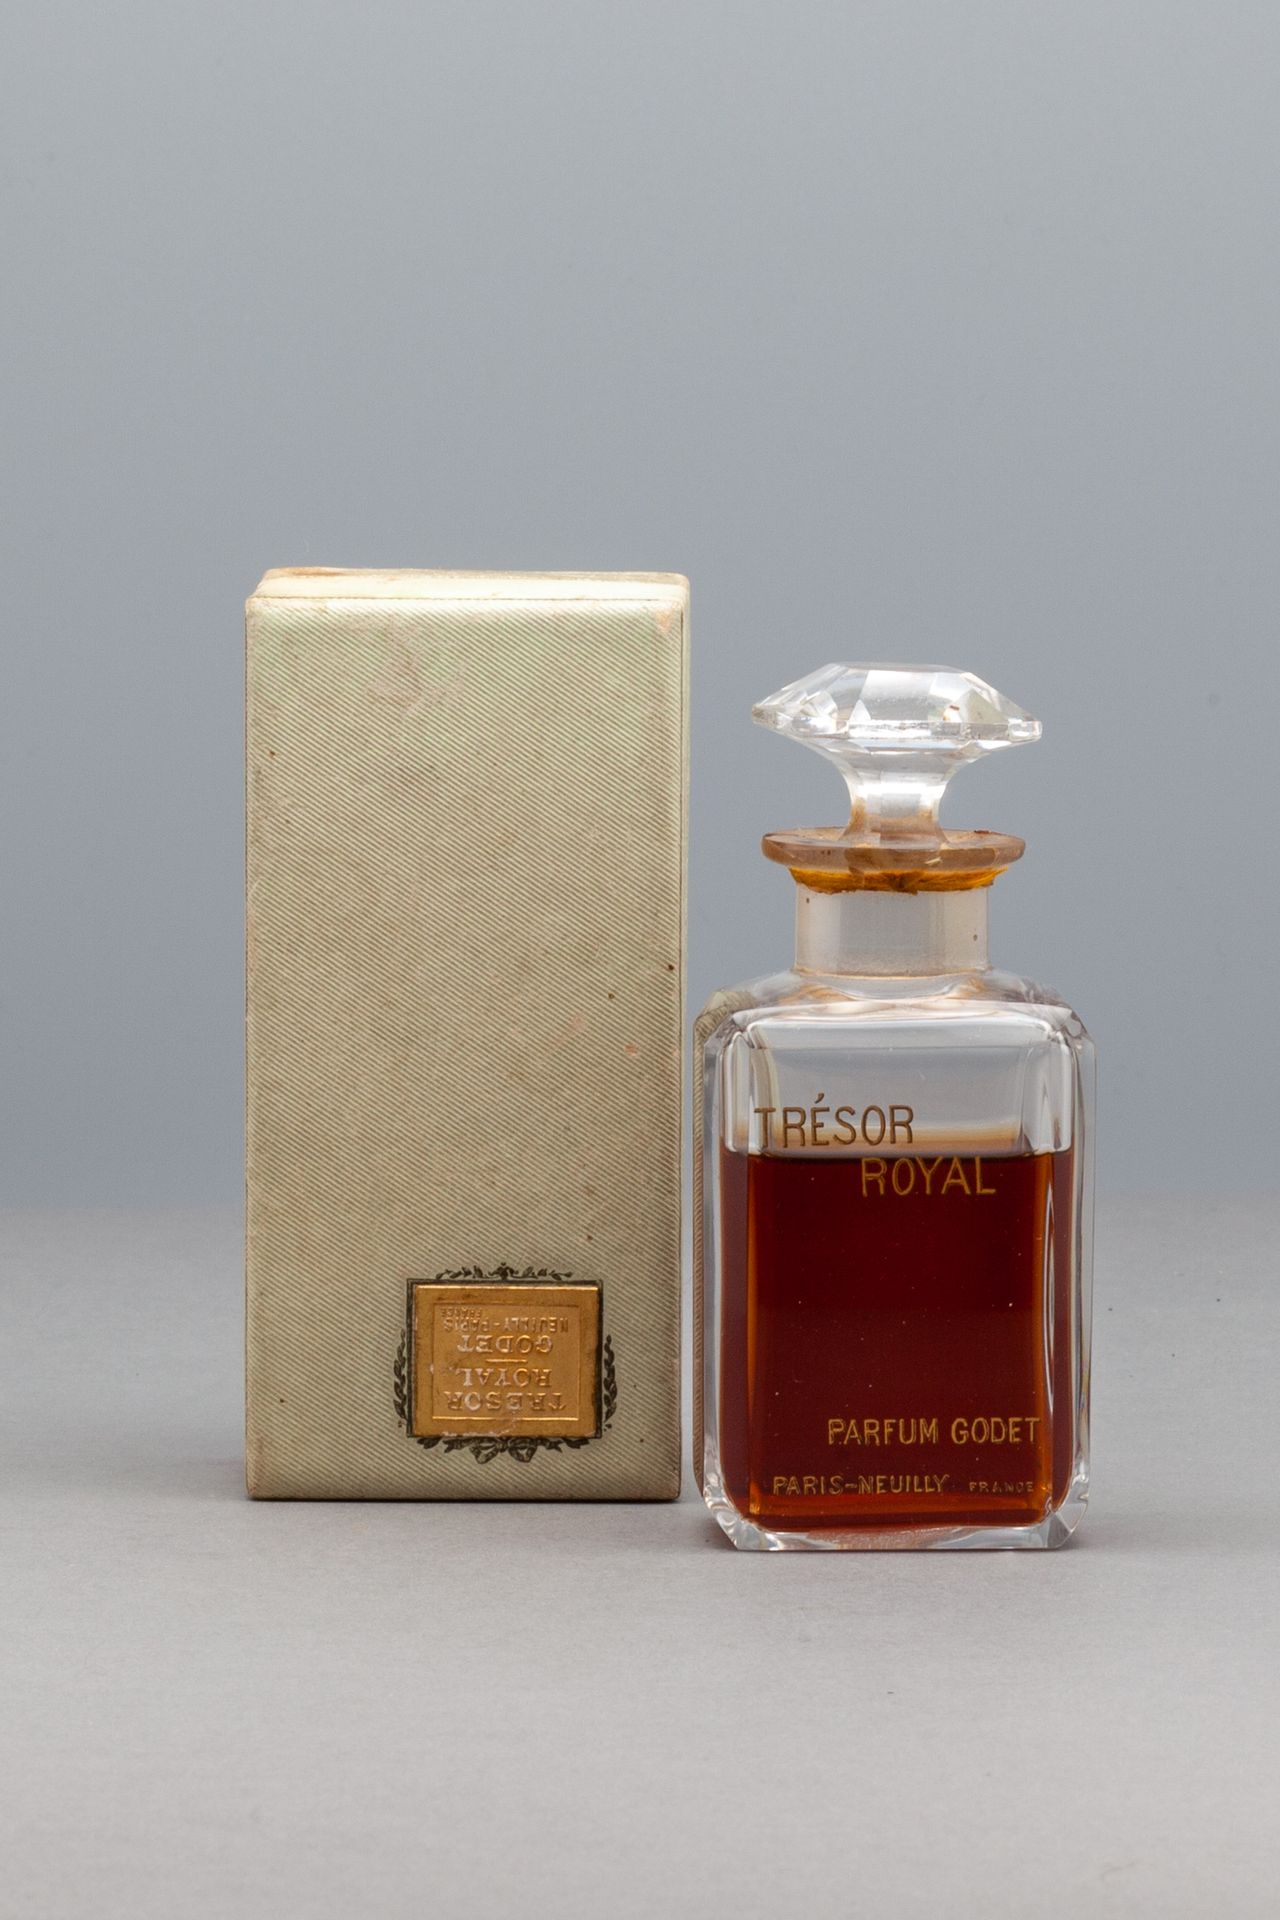 GODET "TRESOR ROYAL" 四角形的玻璃瓶，有镀金。框题。高10.8厘米 - 盒子尺寸11x5.7厘米